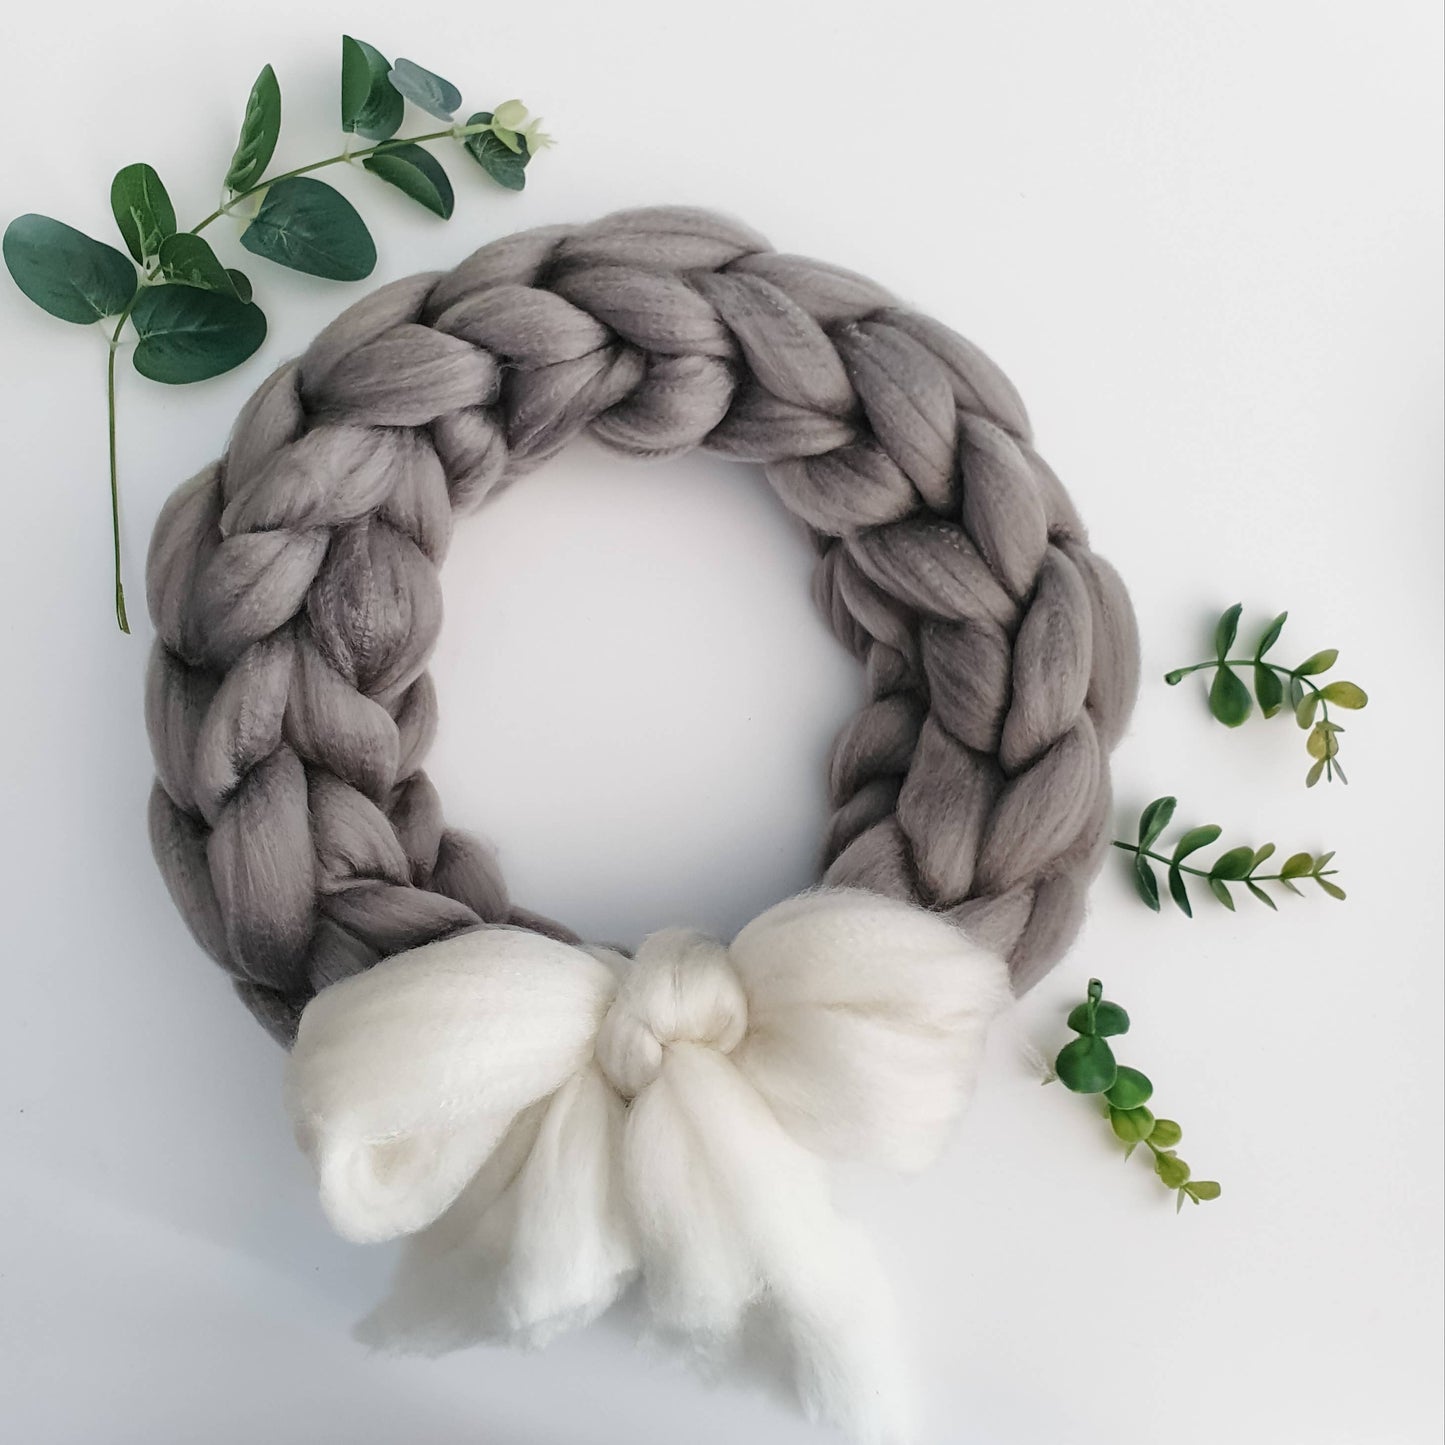 Giant Knit Wreath Kit